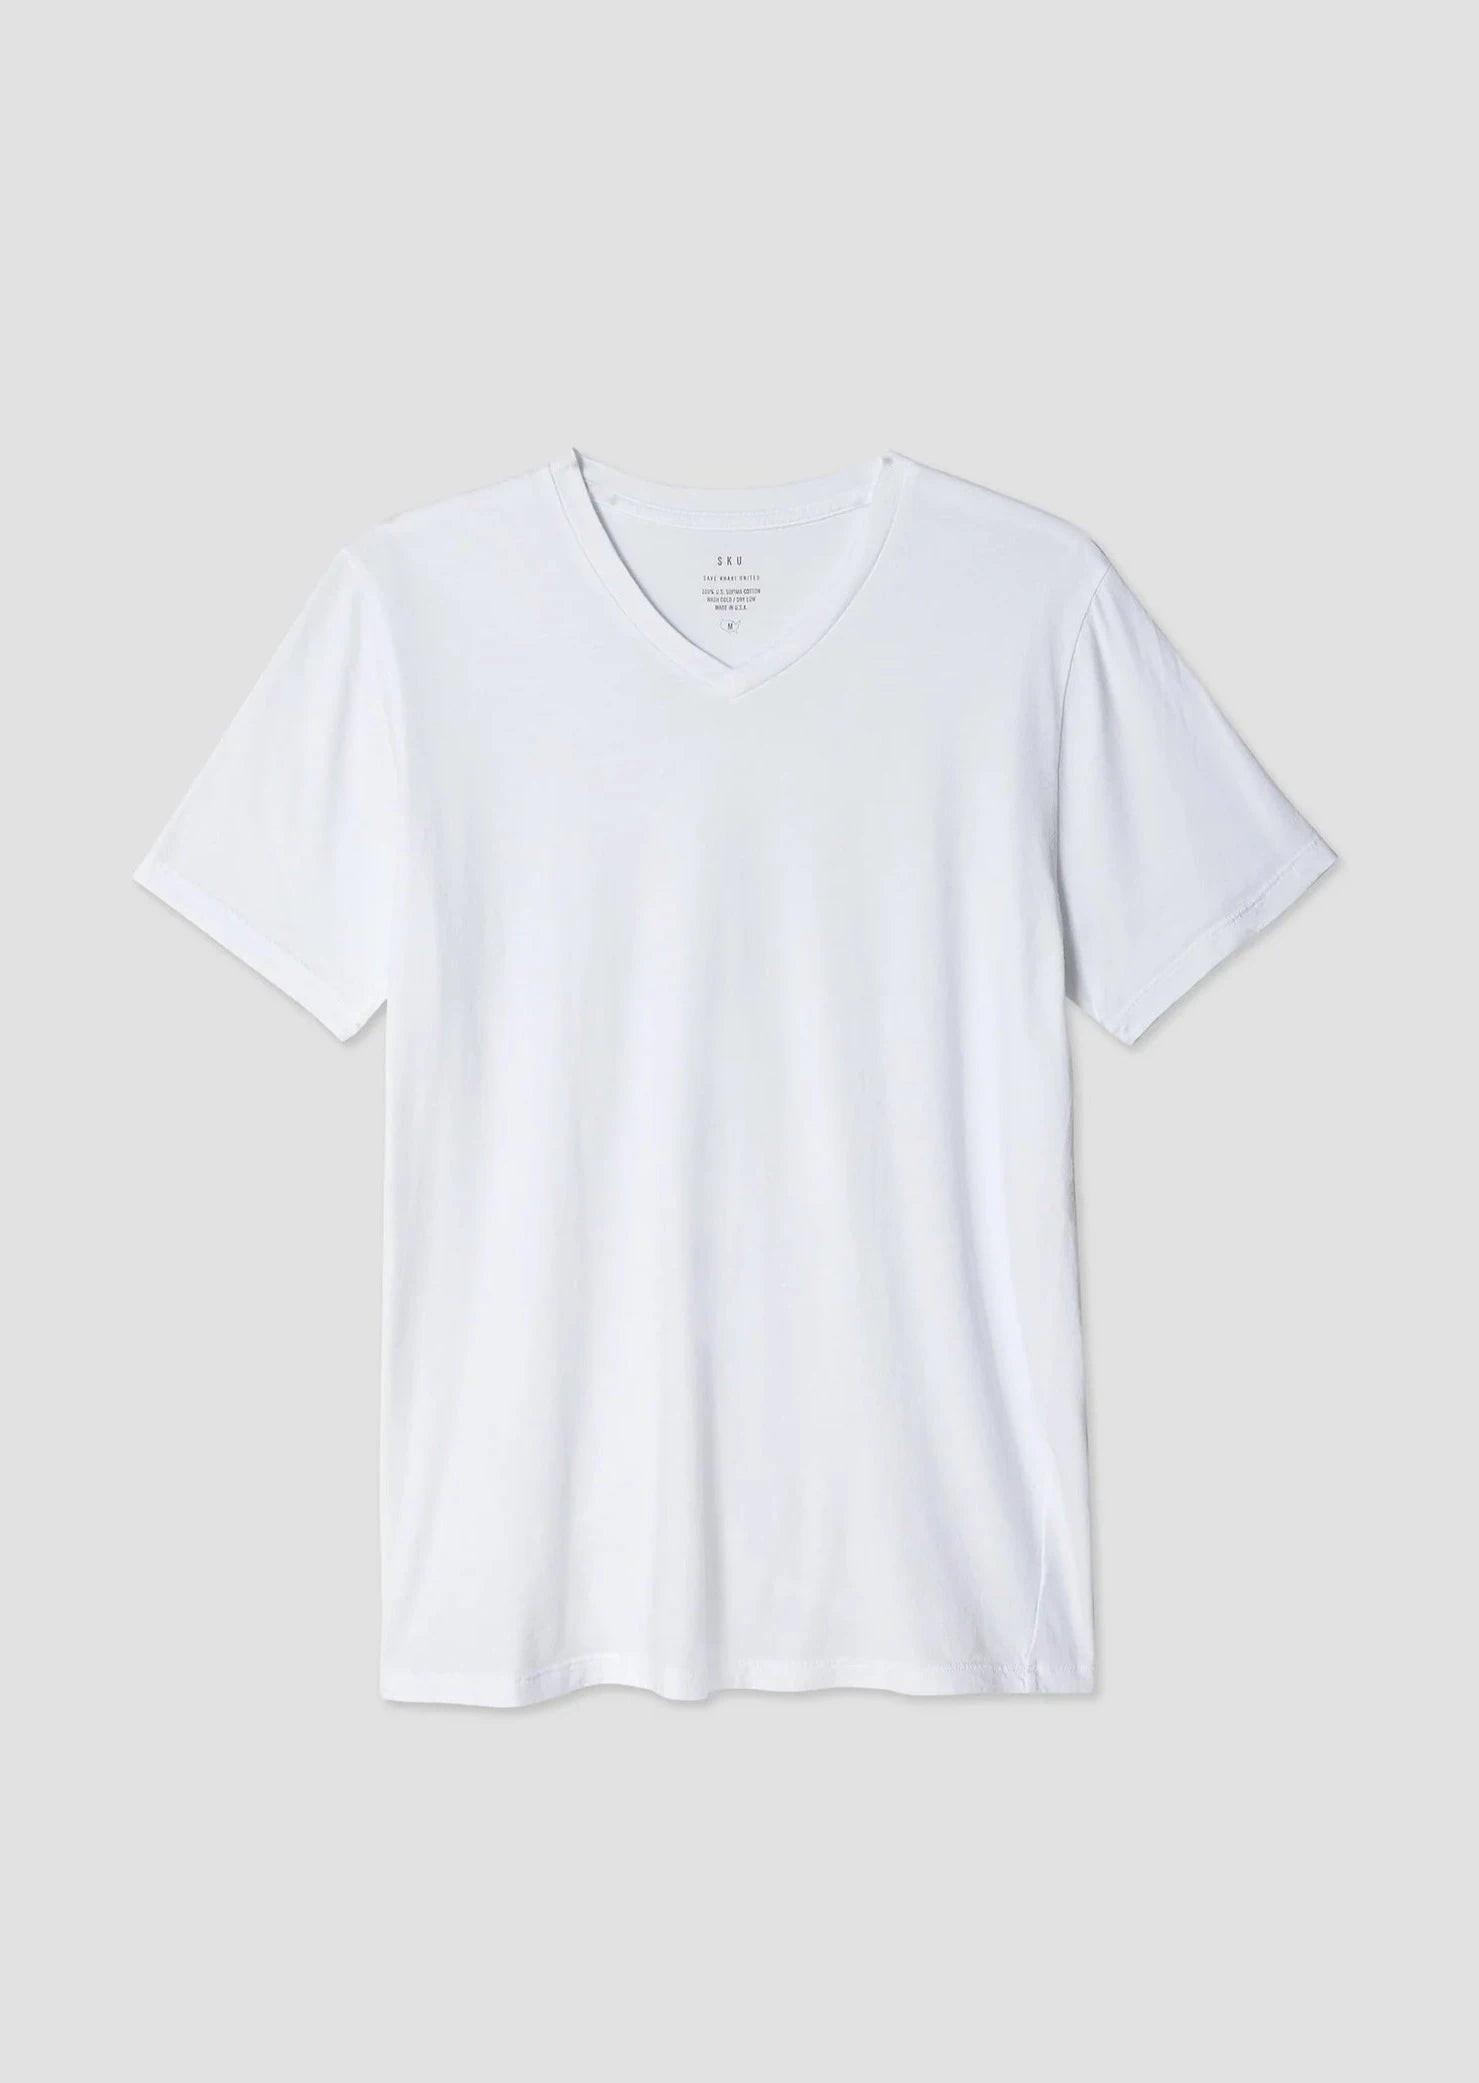 S/S Supima Cotton Jersey V Neck T Shirt Save Khaki United White S 